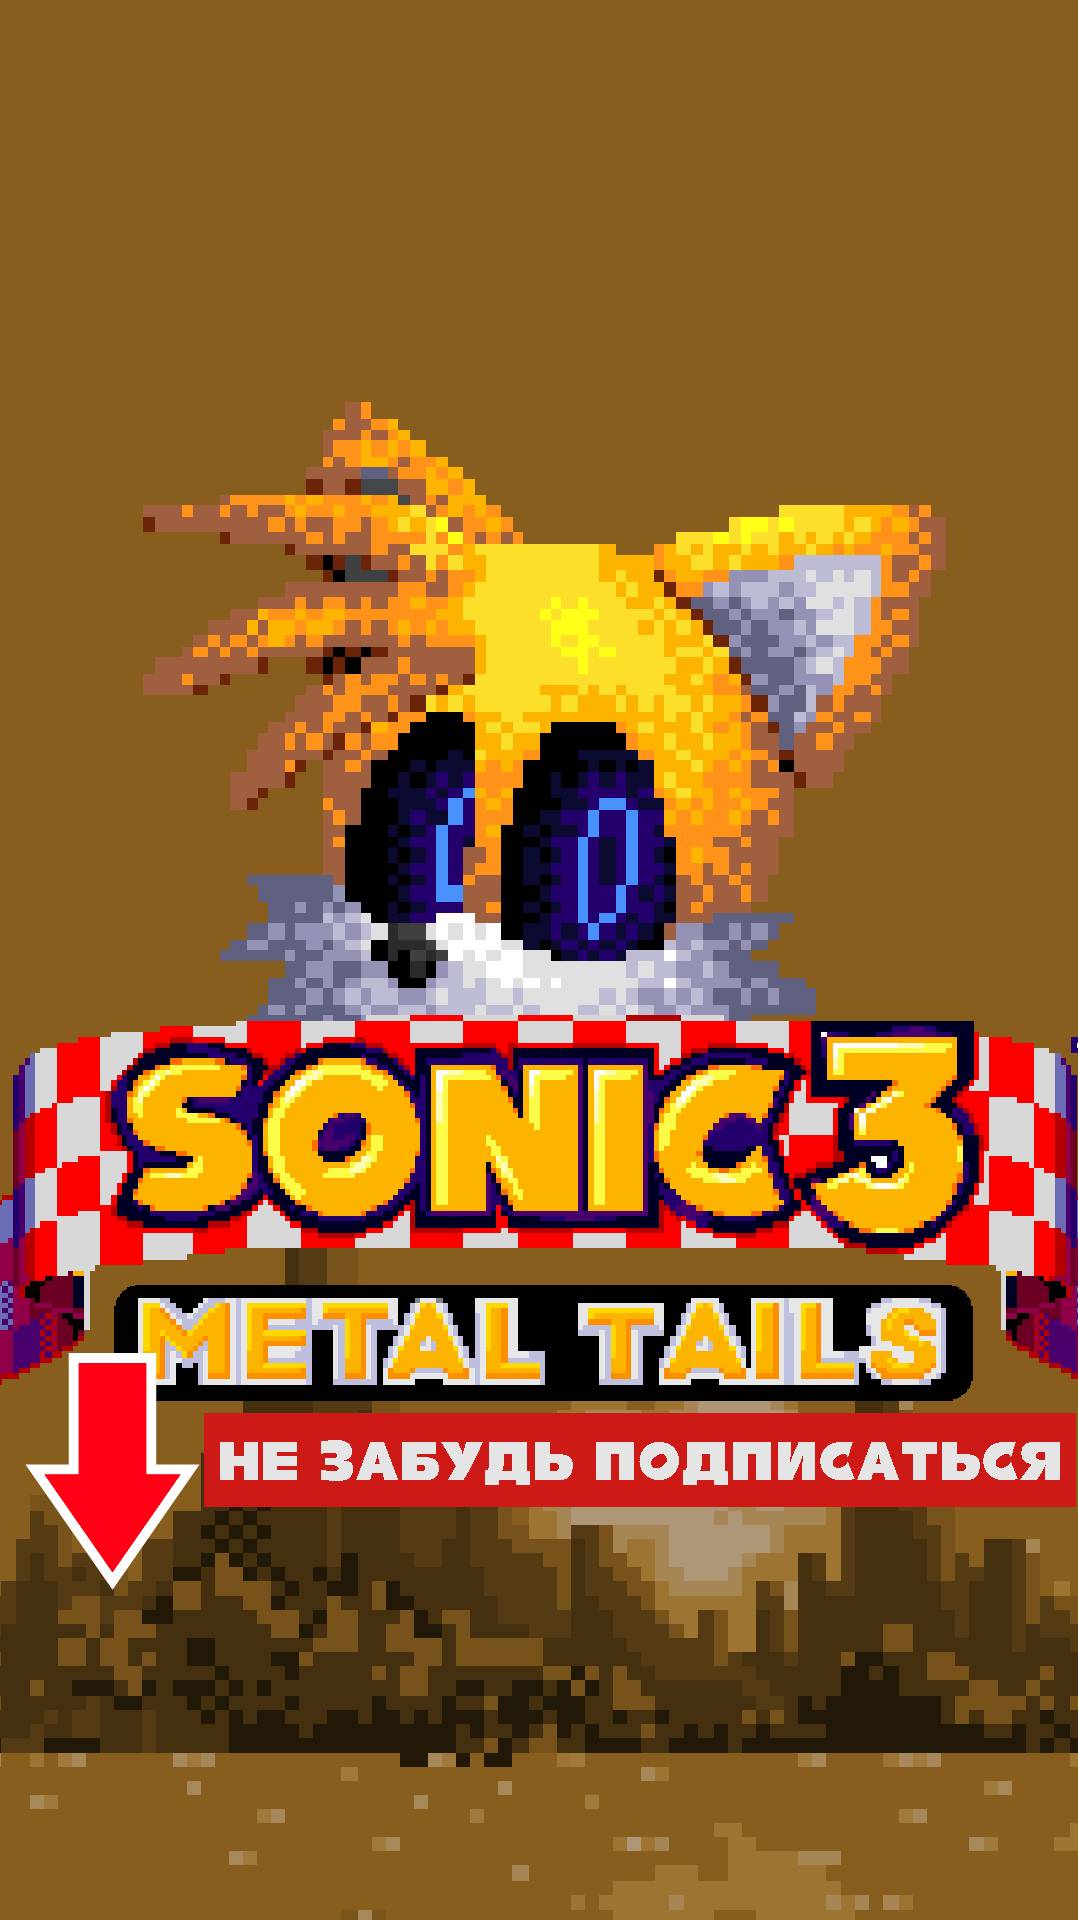 МЕТАЛ ТЕЙЛЗ В СОНИК 3 AIR   Мод на Sonic 3 A.I.R